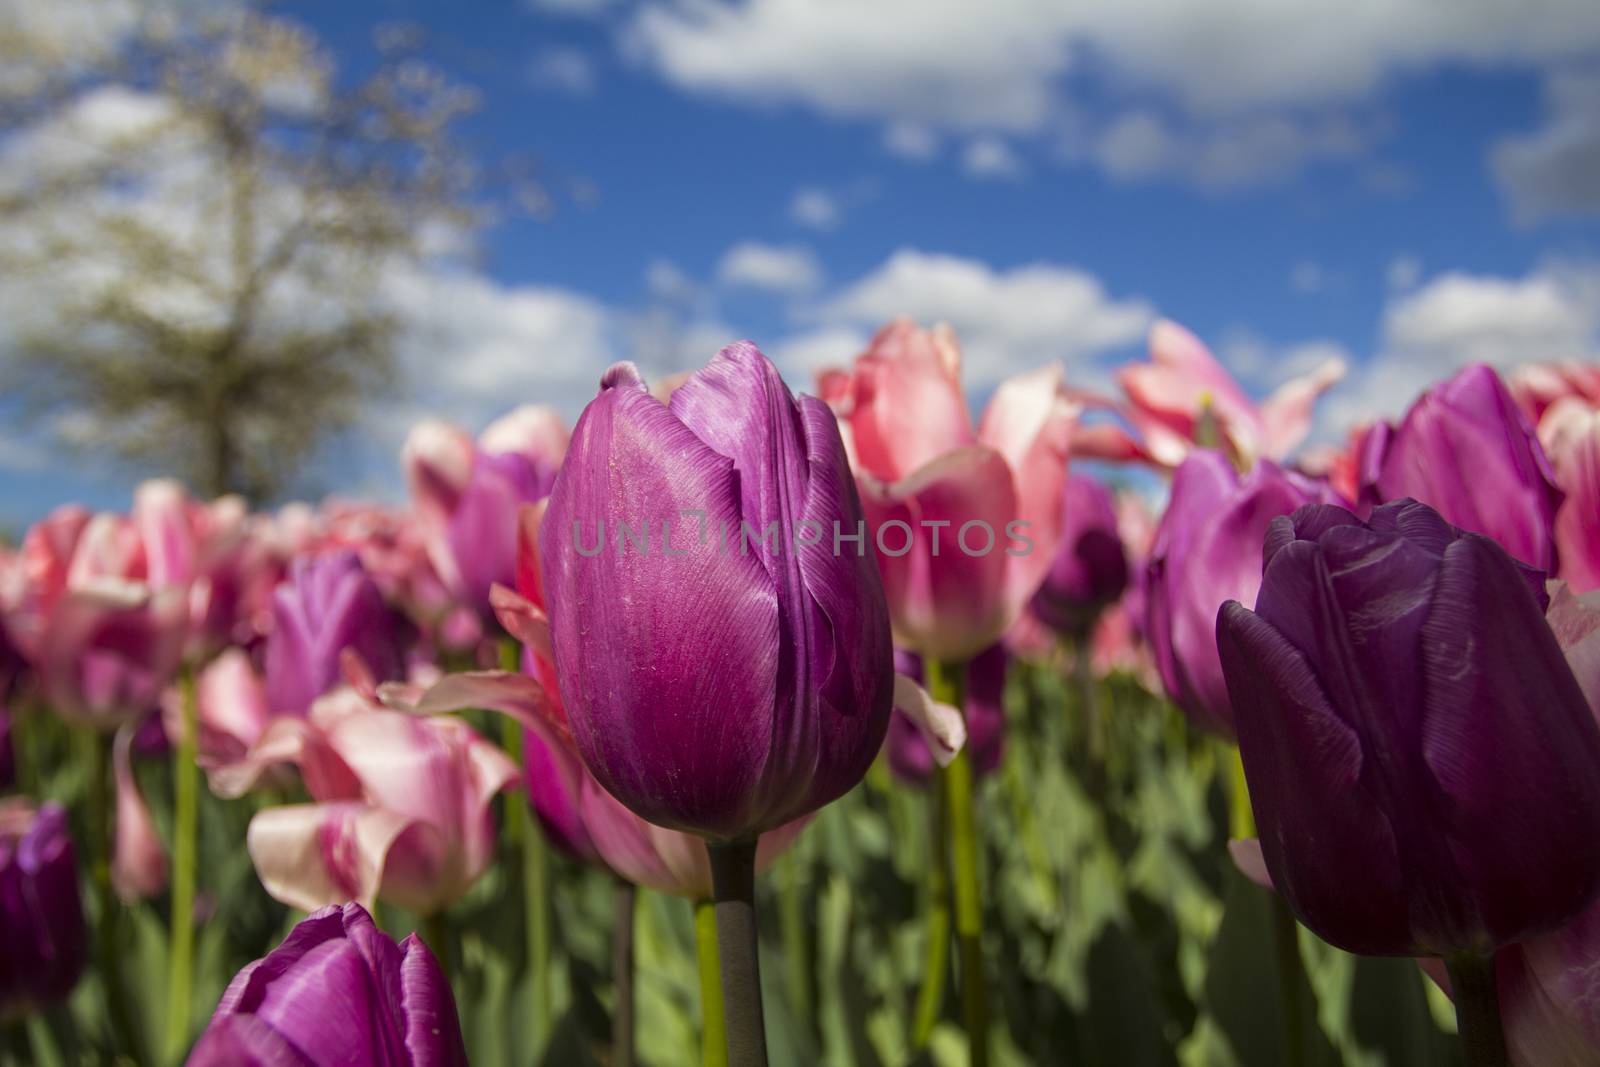 Tulips in park by Aarstudio